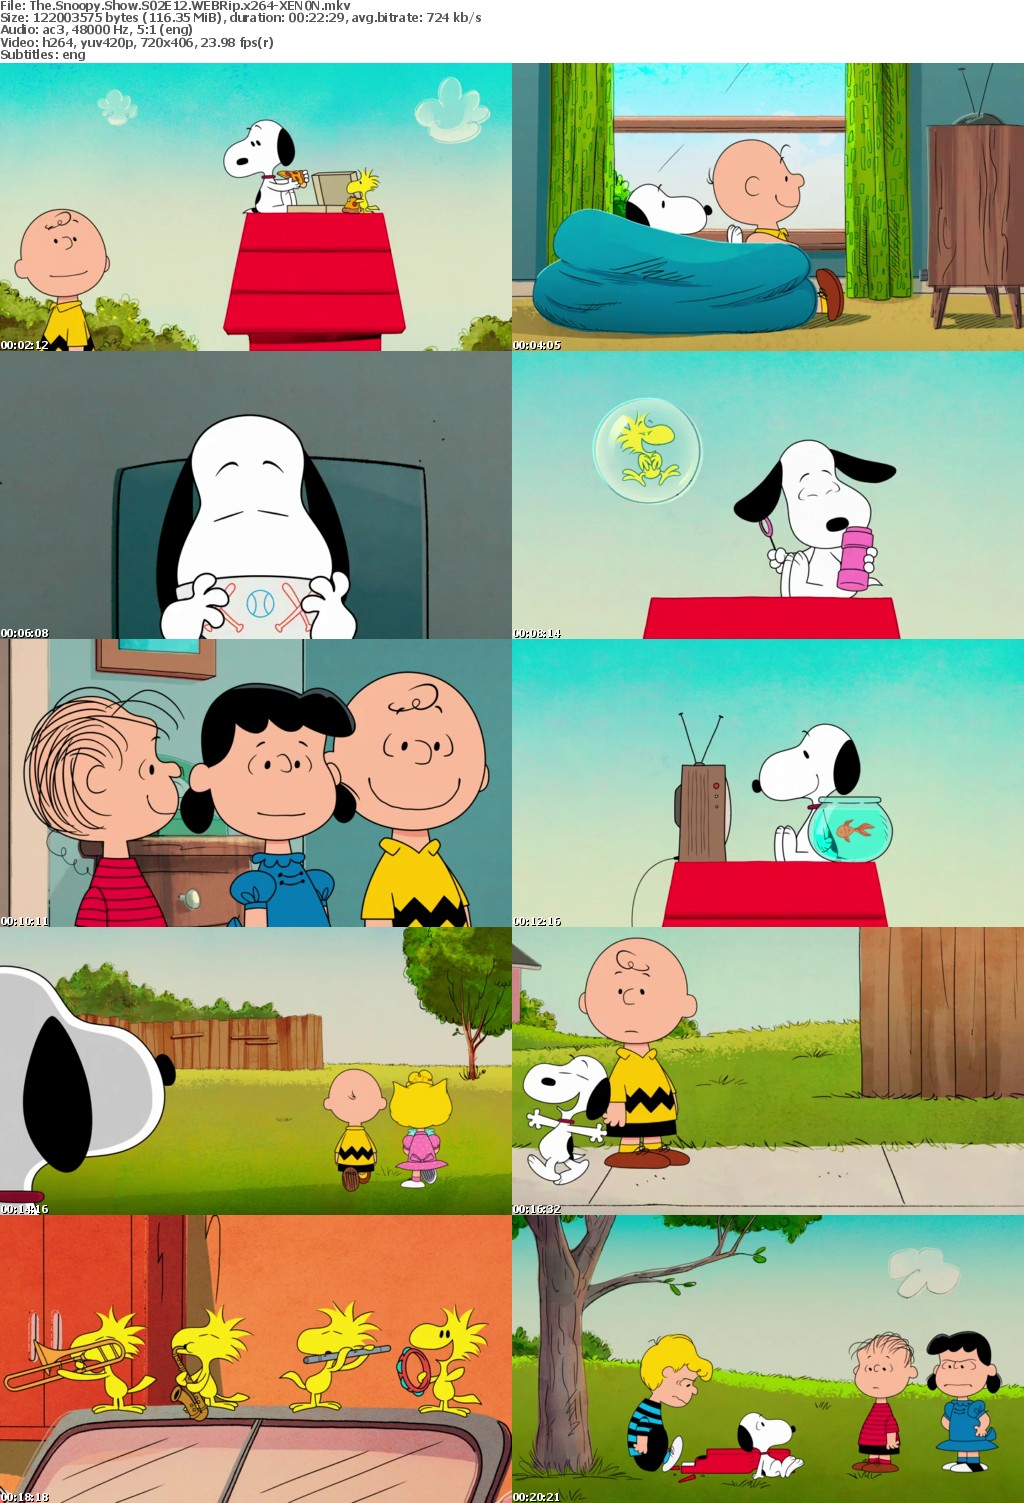 The Snoopy Show S02E12 WEBRip x264-XEN0N